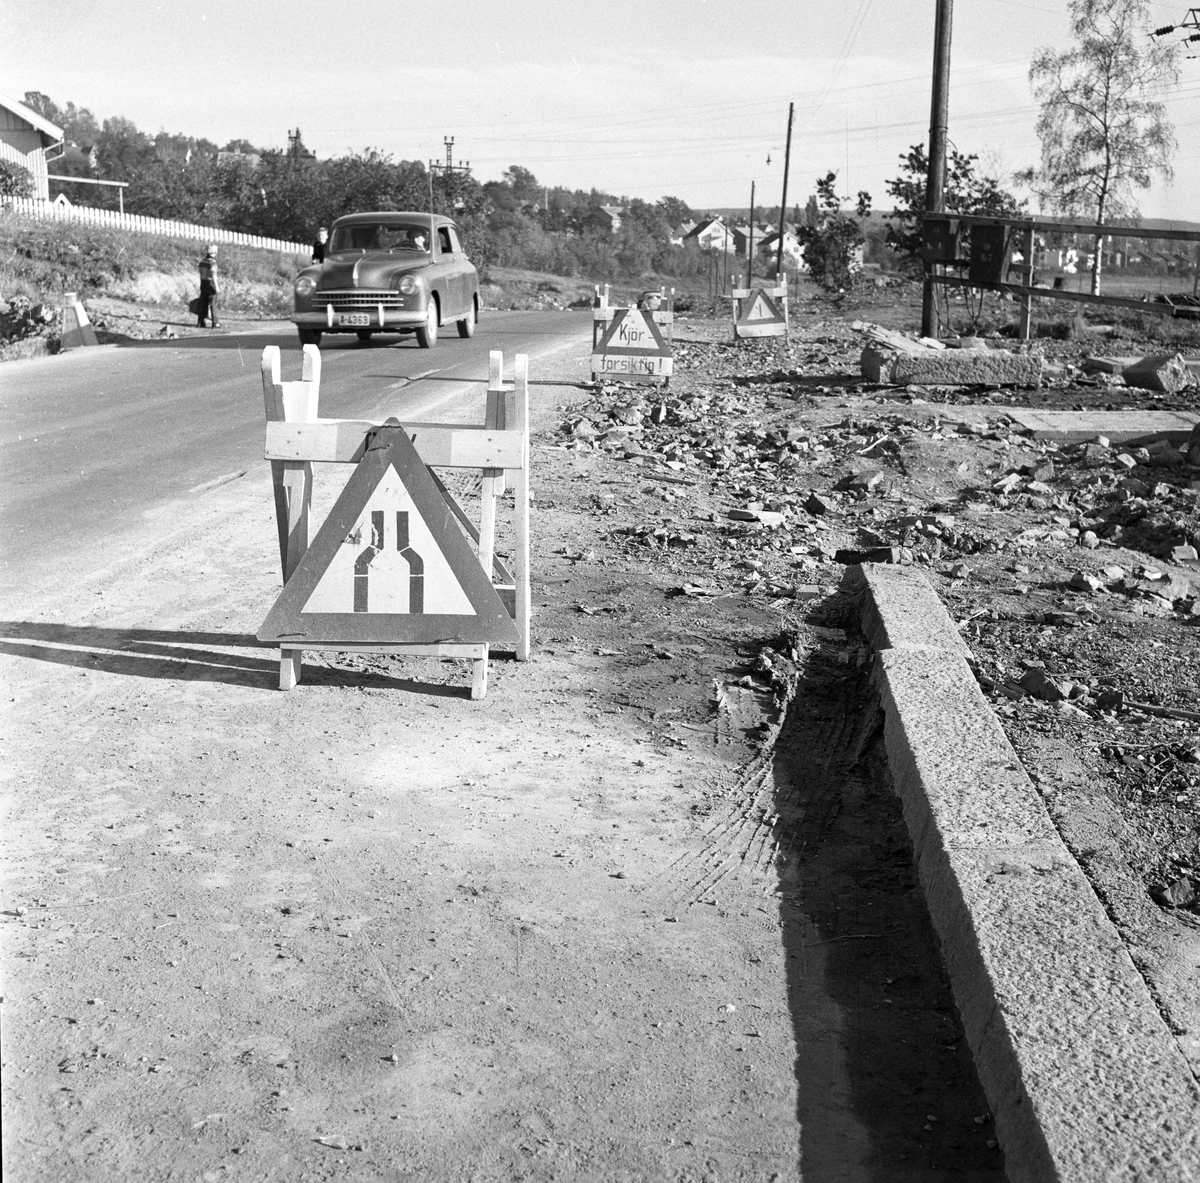 Serie. Bilder fra trafikken i Oslo,bl.a. diverse trafikk- og varselsskilt. Fotografert oktober 1956.
.


